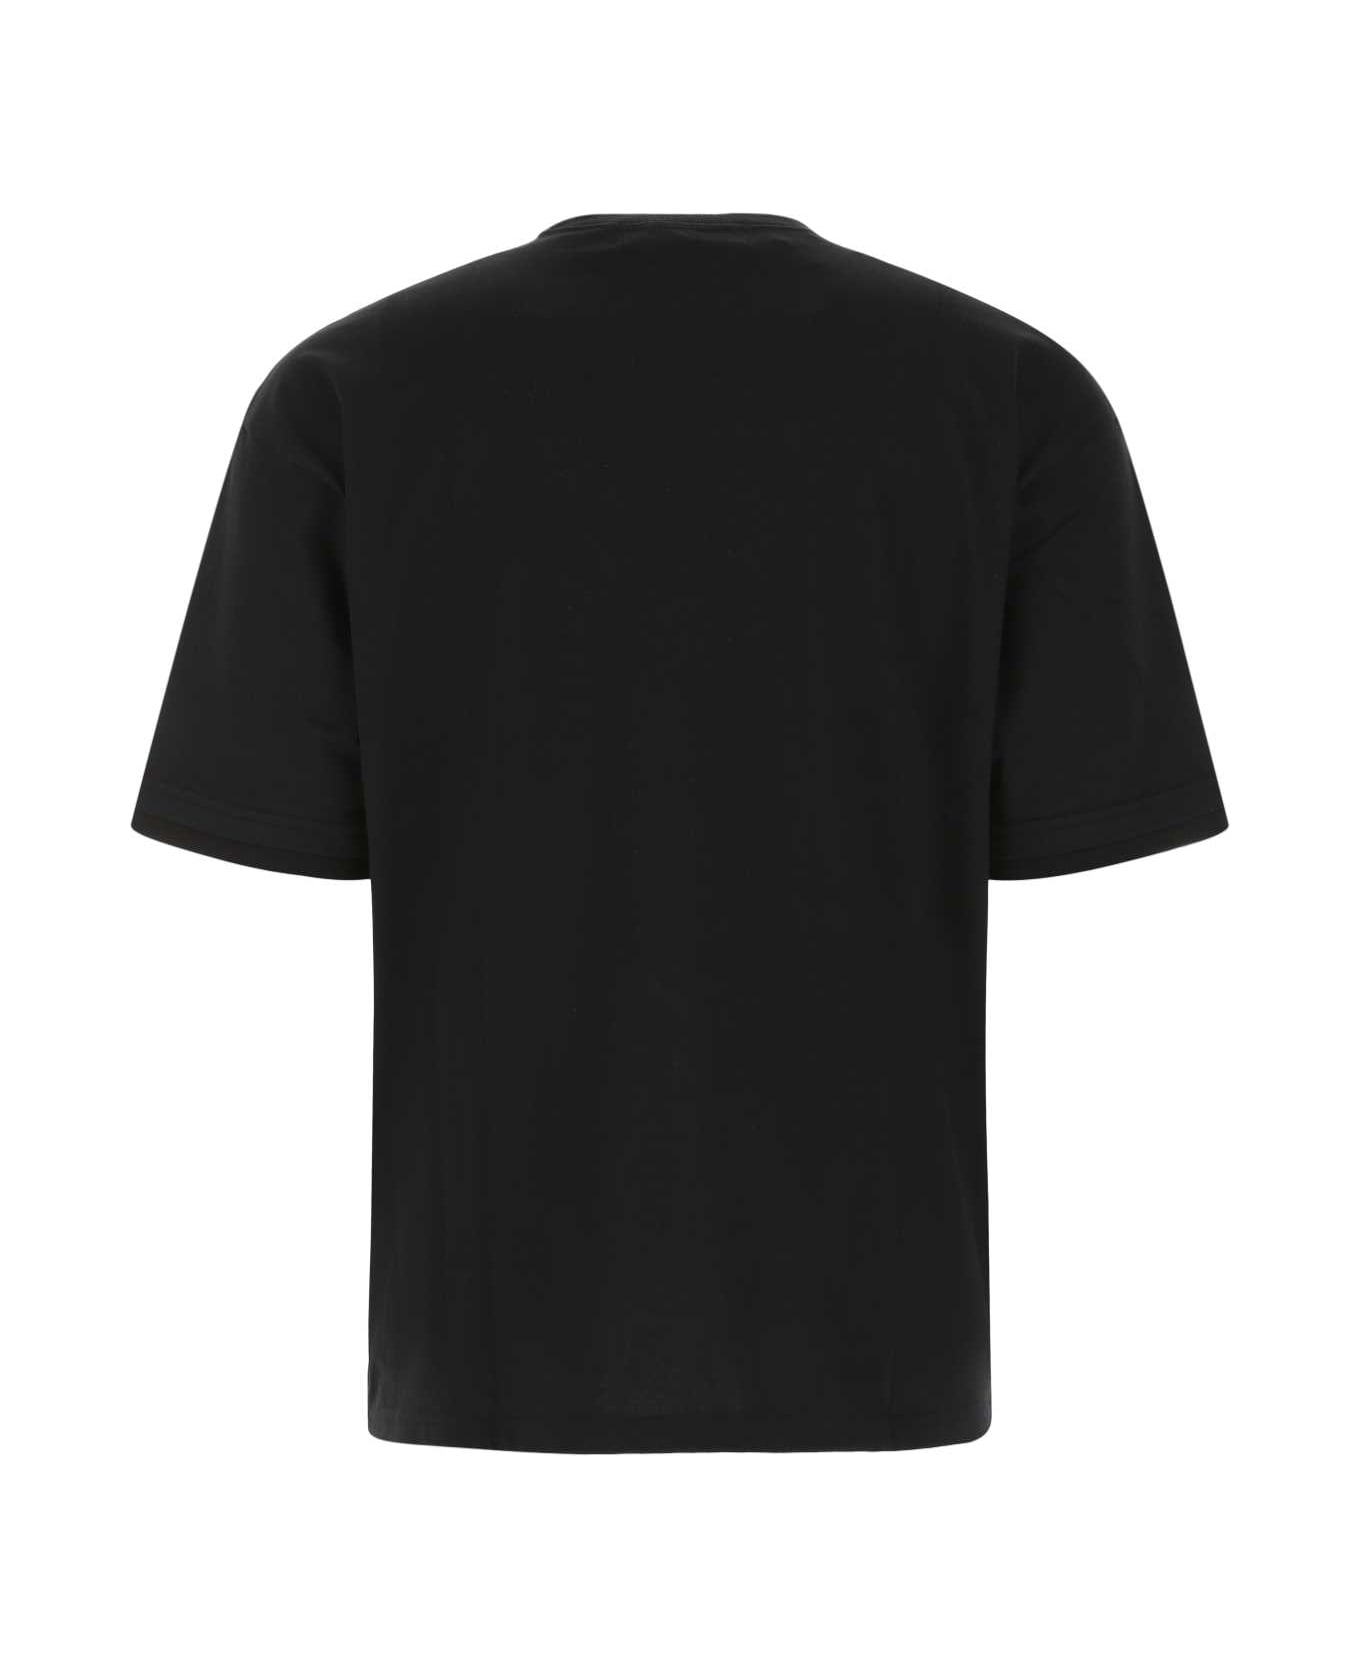 AMBUSH Black Cotton T-shirt - 1003 シャツ